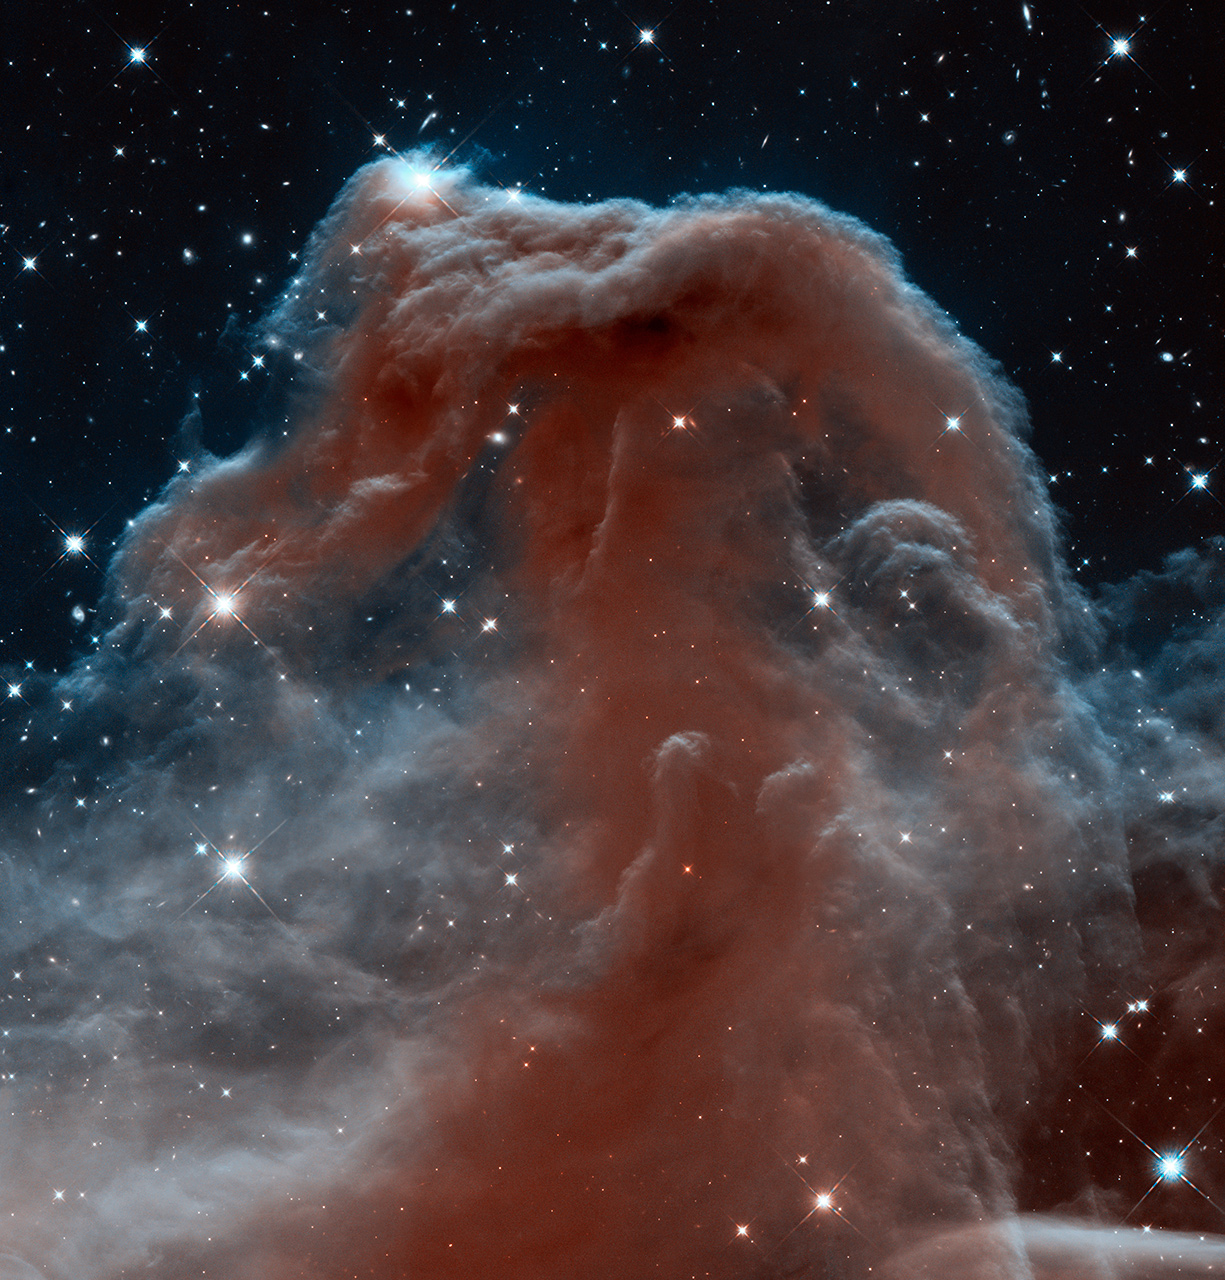 La nébuleuse de la Tête de cheval en infrarouge par Hubble